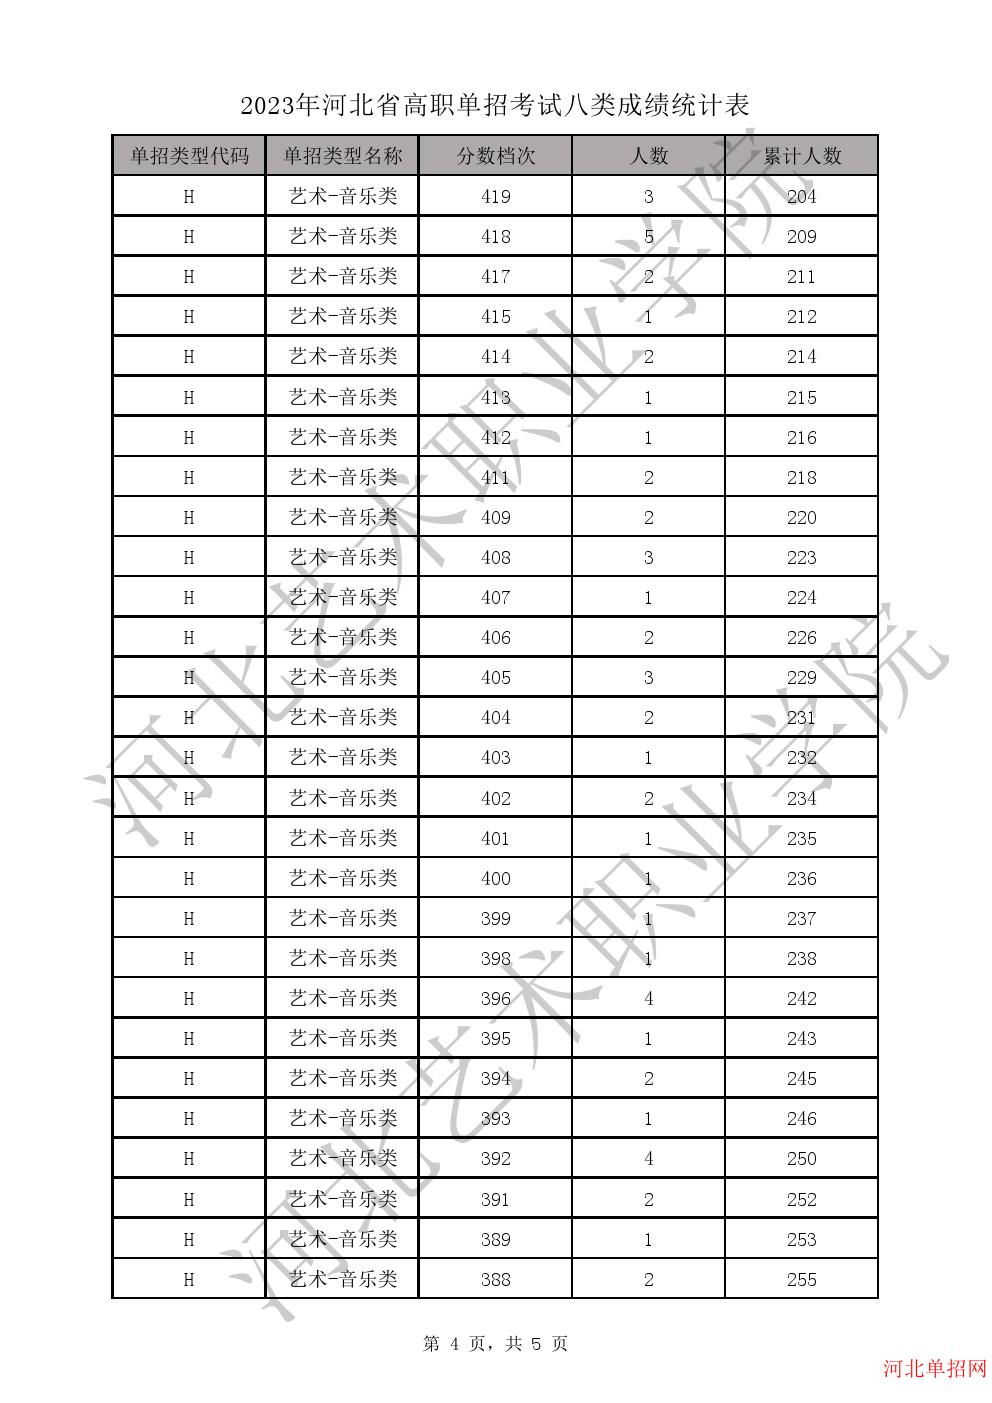 2023年河北省高职单招考试八类一分一档表-H艺术-音乐类一分一档表 图4